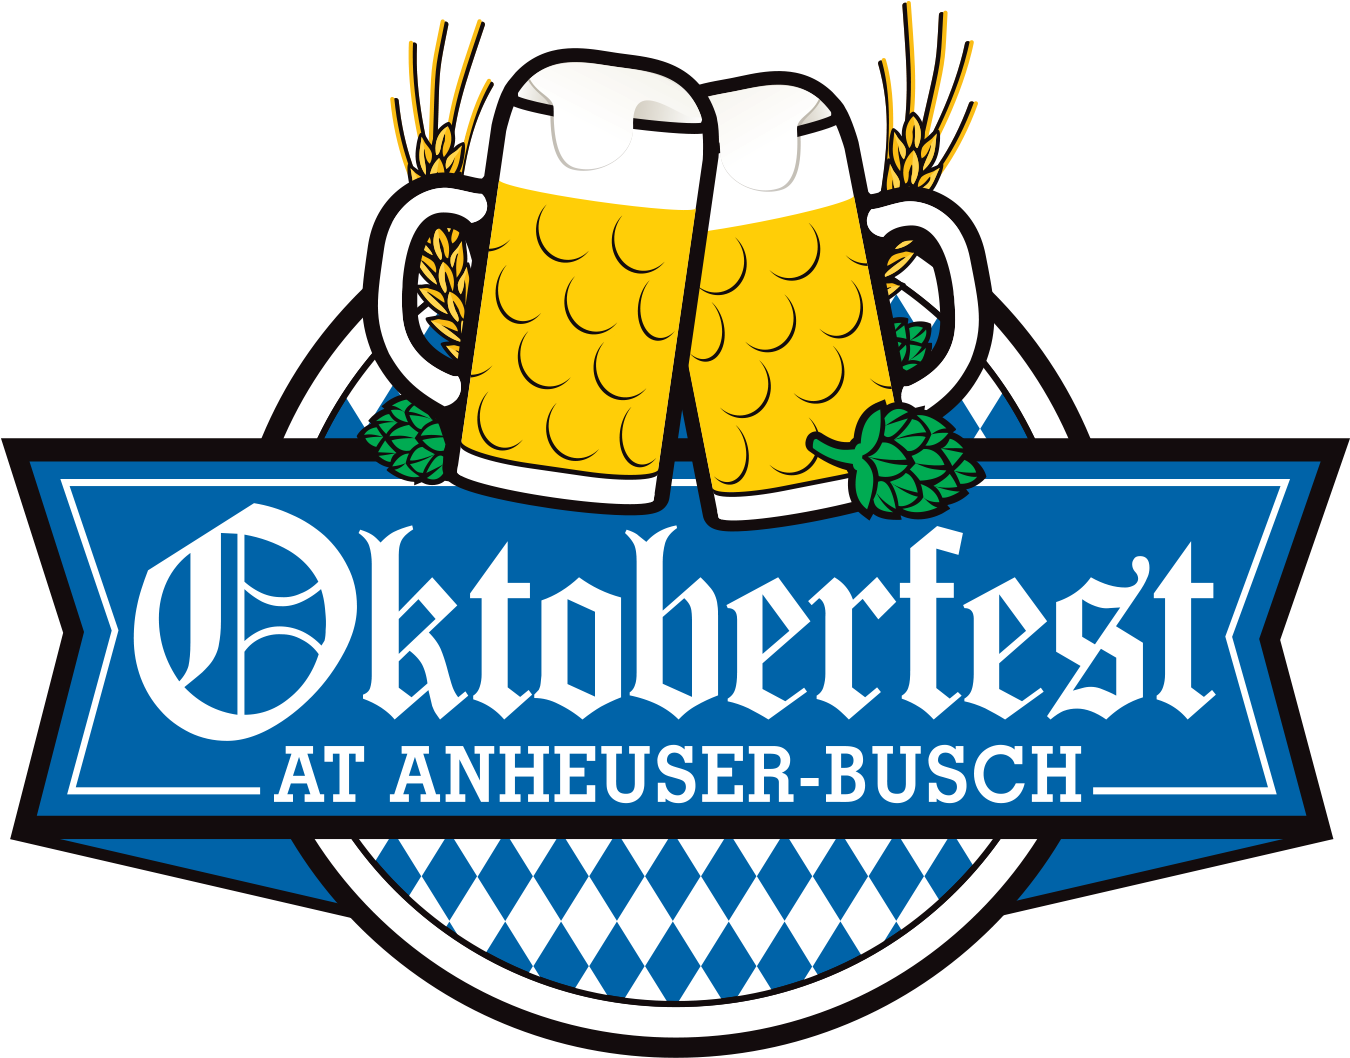 Anheuser-busch Brewery - Oktoberfest At Anheuser Busch (2160x1080), Png Download